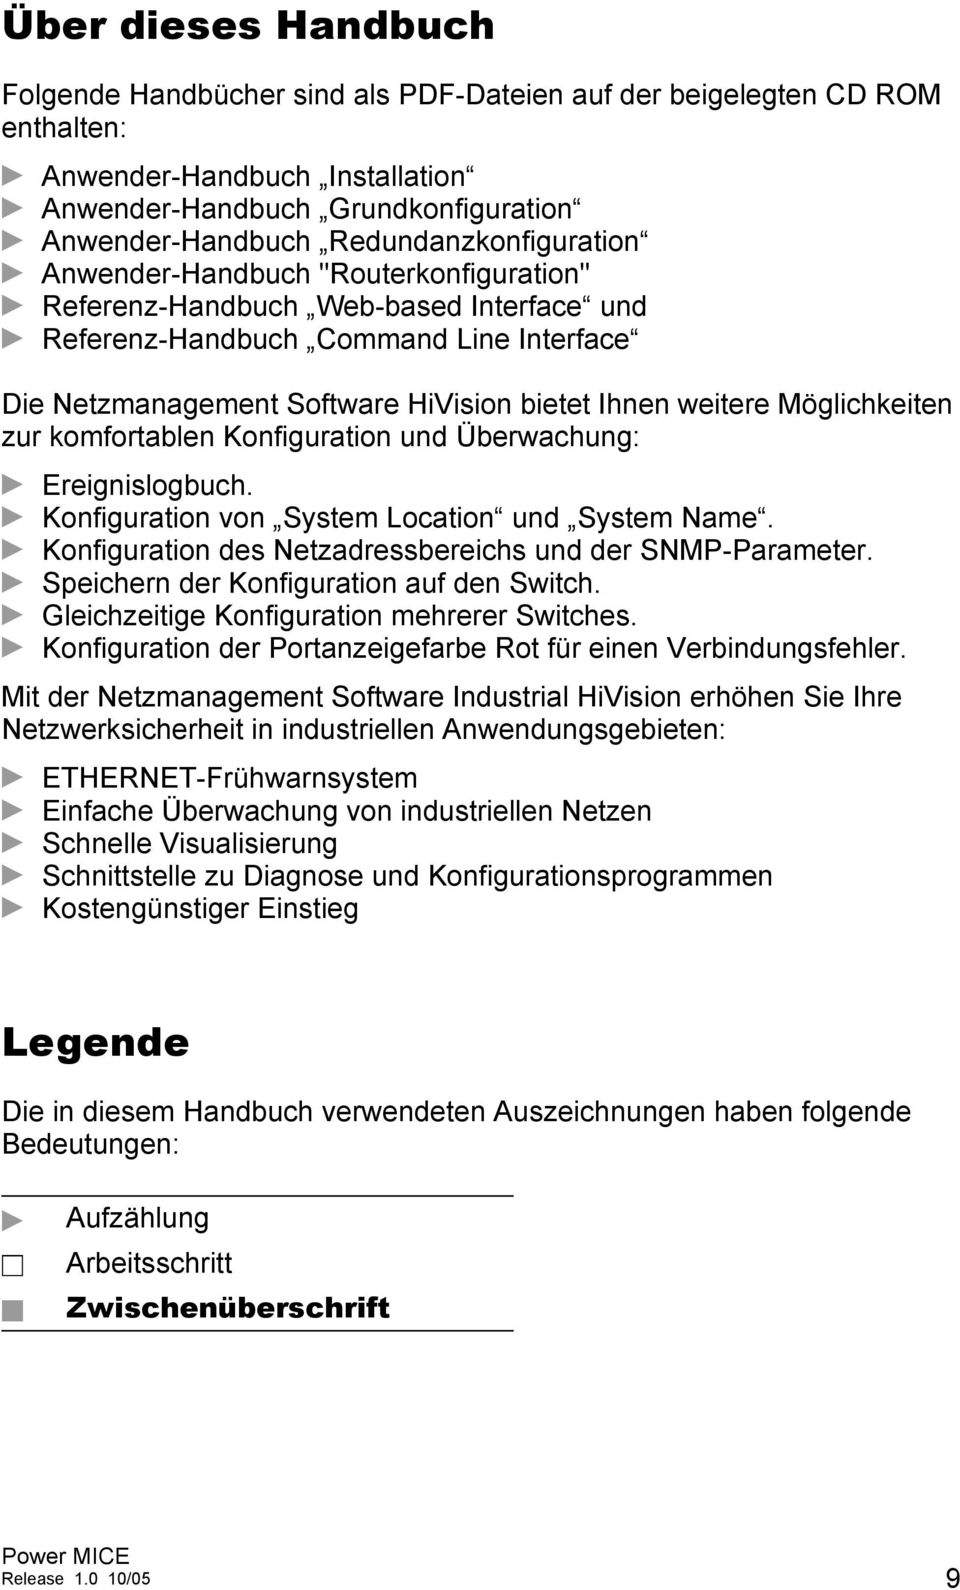 Ihnen weitere Möglichkeiten zur komfortablen Konfiguration und Überwachung: D Ereignislogbuch. D Konfiguration von System Location und System Name.